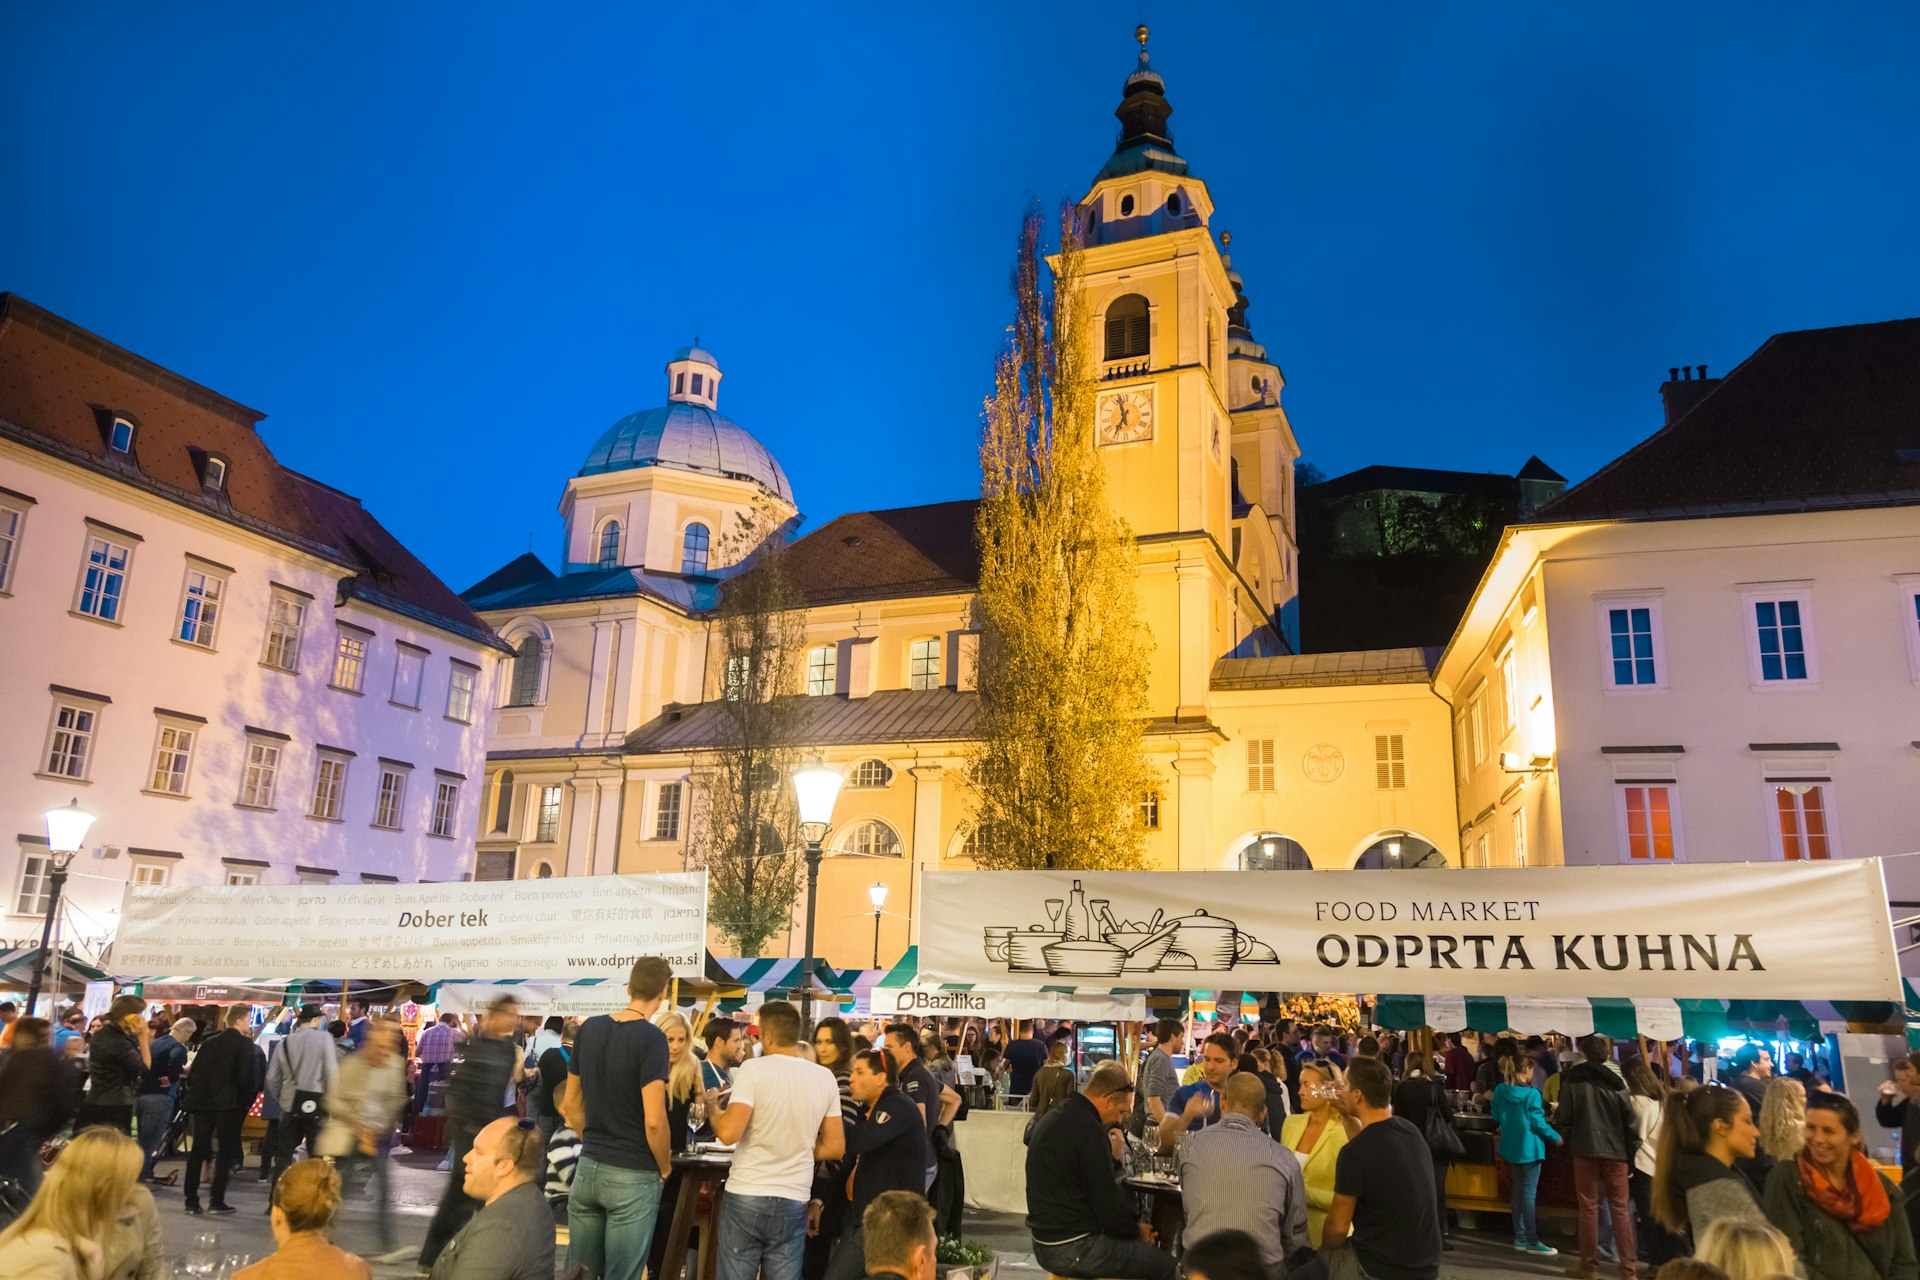 Crowds at a market at night in Ljubljana, Slovenia 